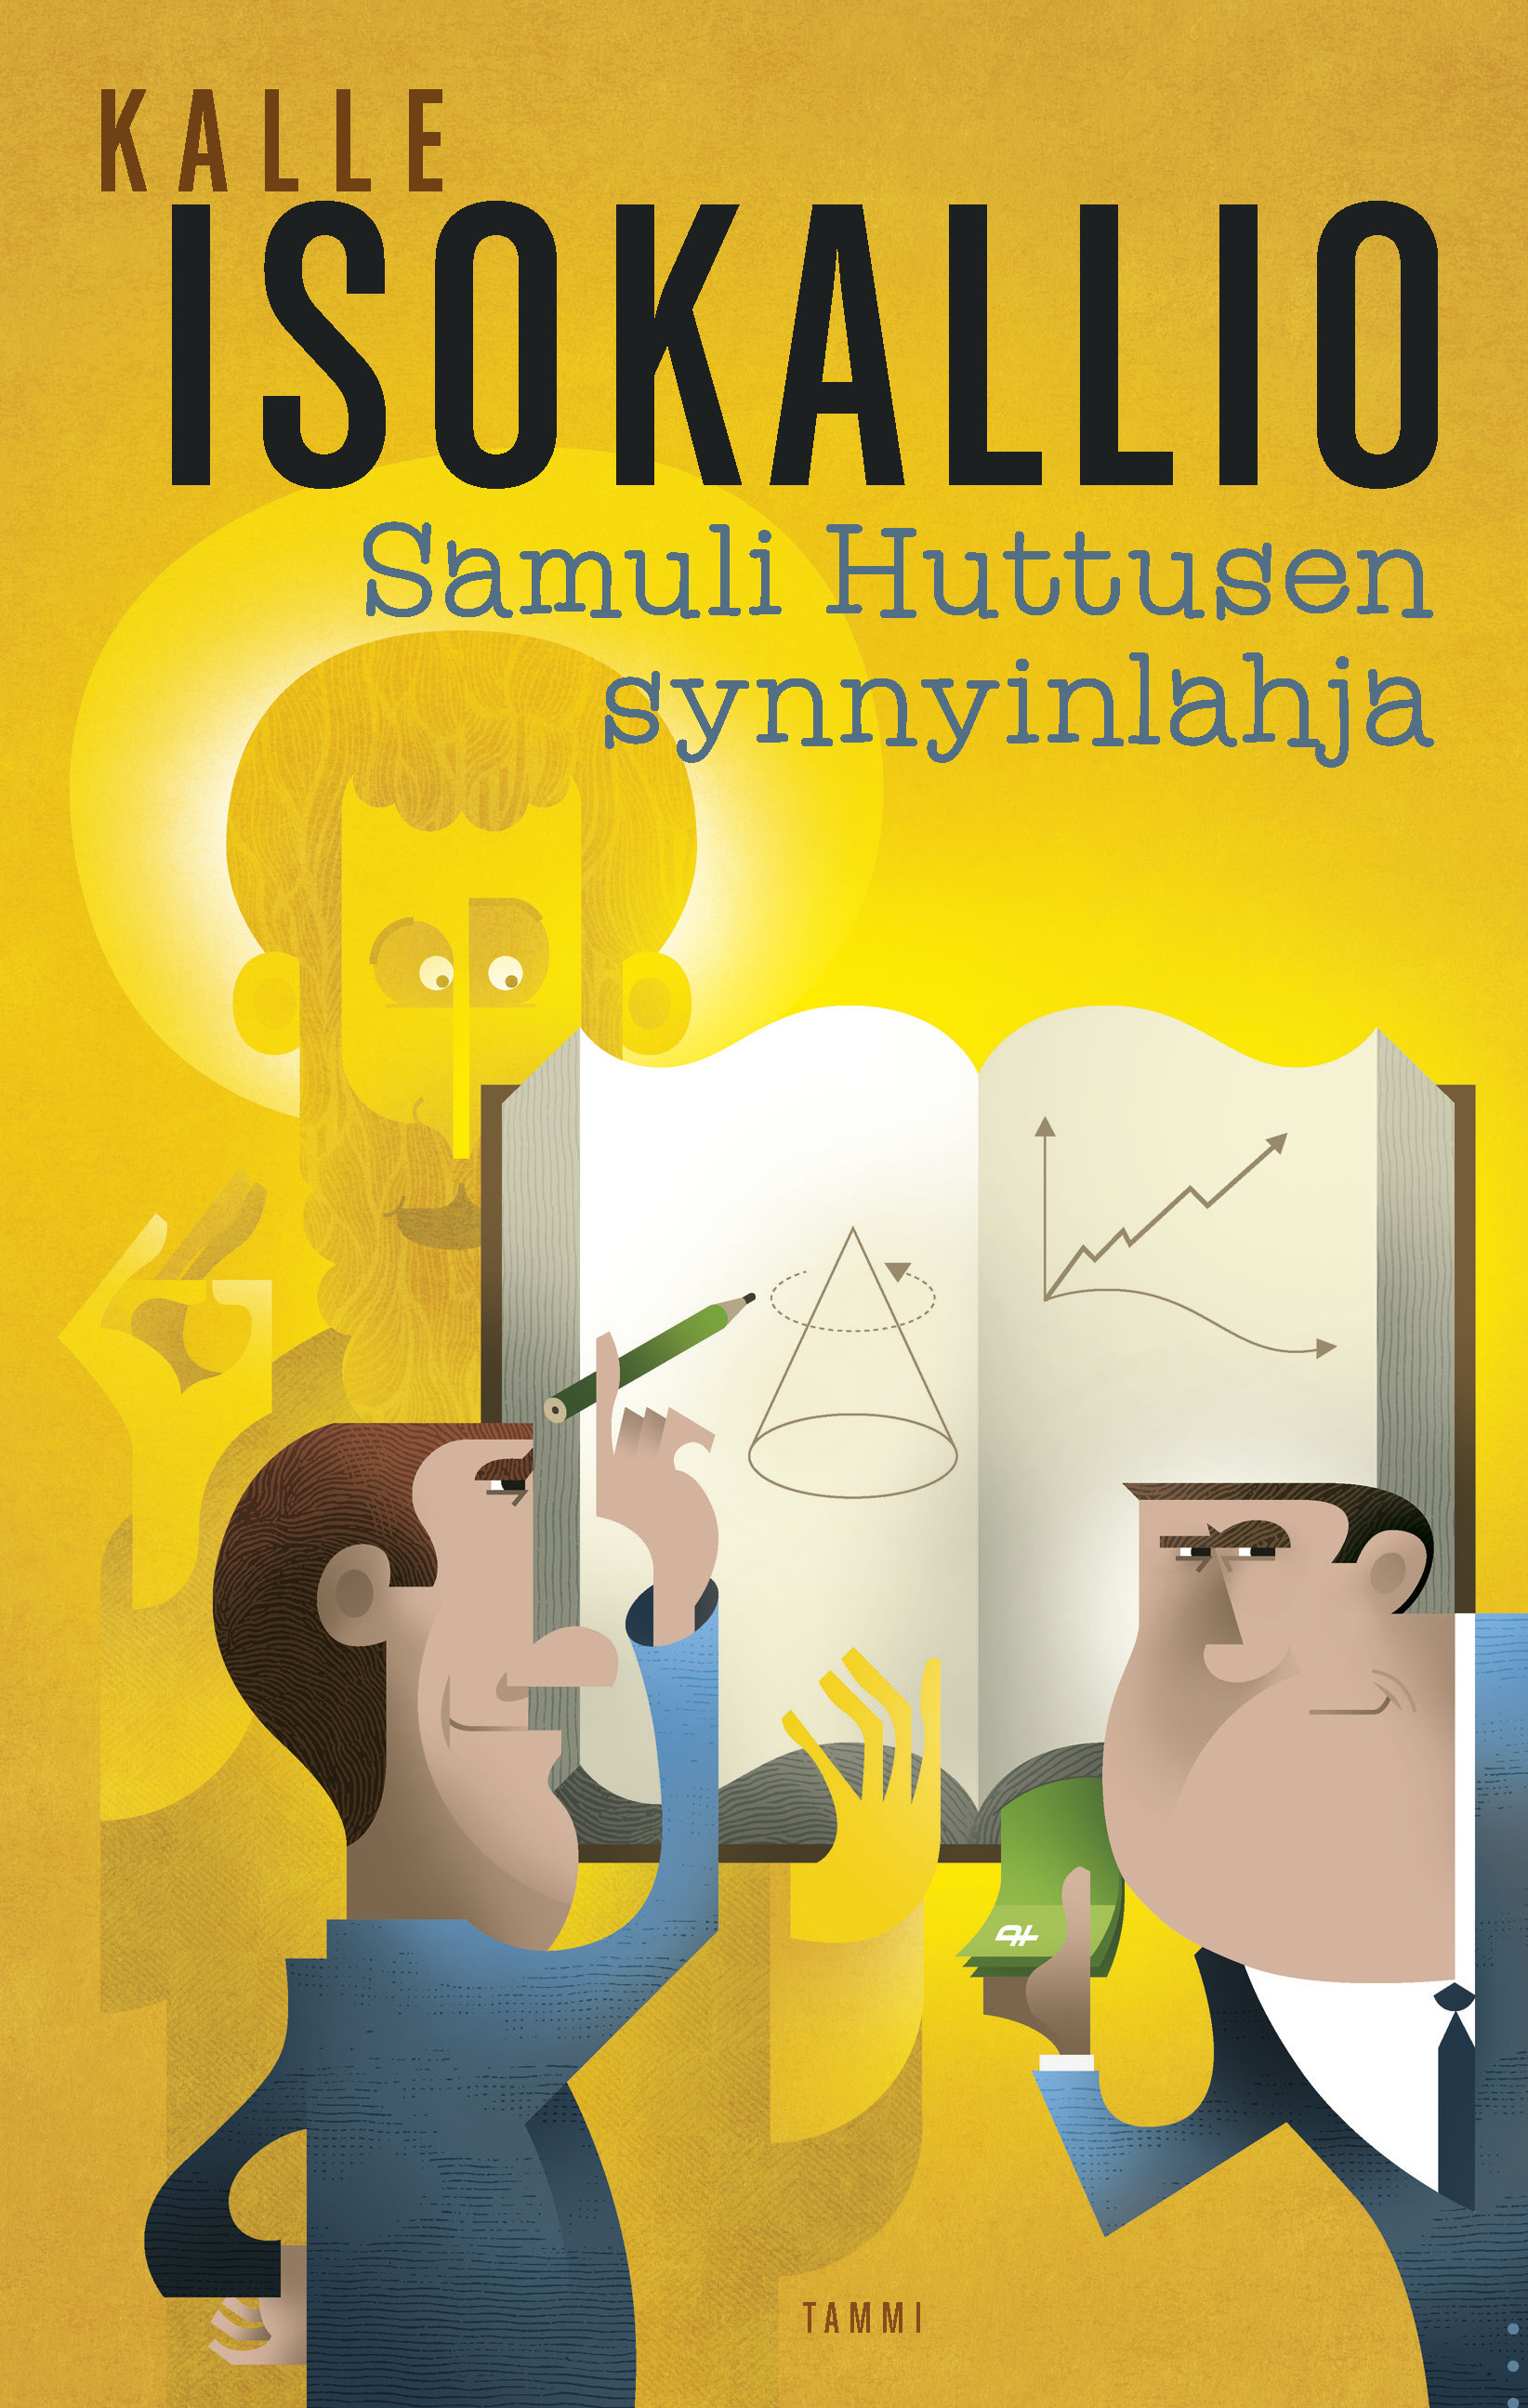 Isokallio, Kalle - Samuli Huttusen synnyinlahja, ebook